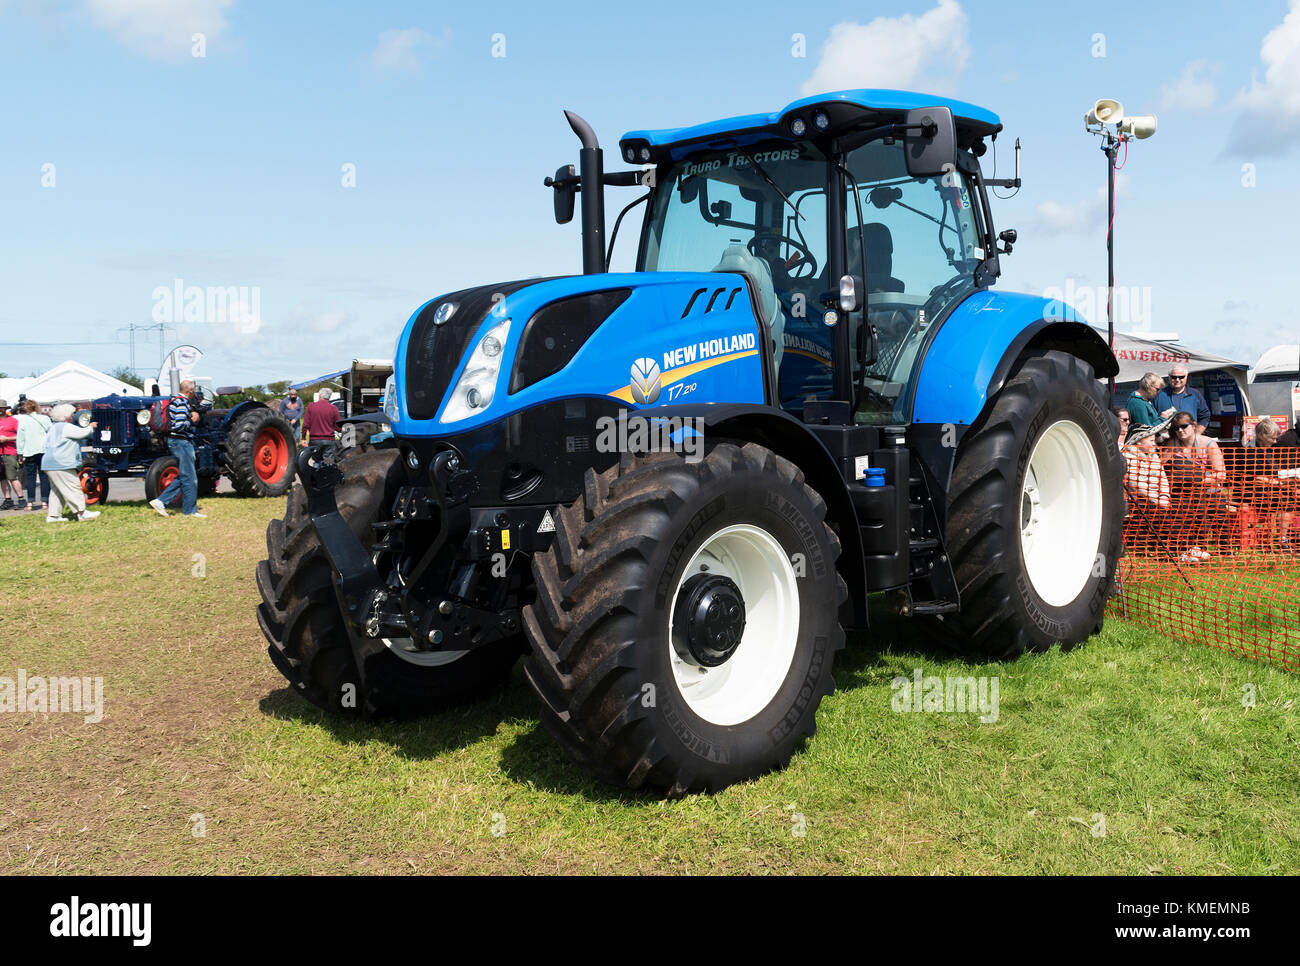 Ein New Holland Traktor eine landwirtschaftliche Ausstellung in Cornwall, England, Großbritannien. Stockfoto